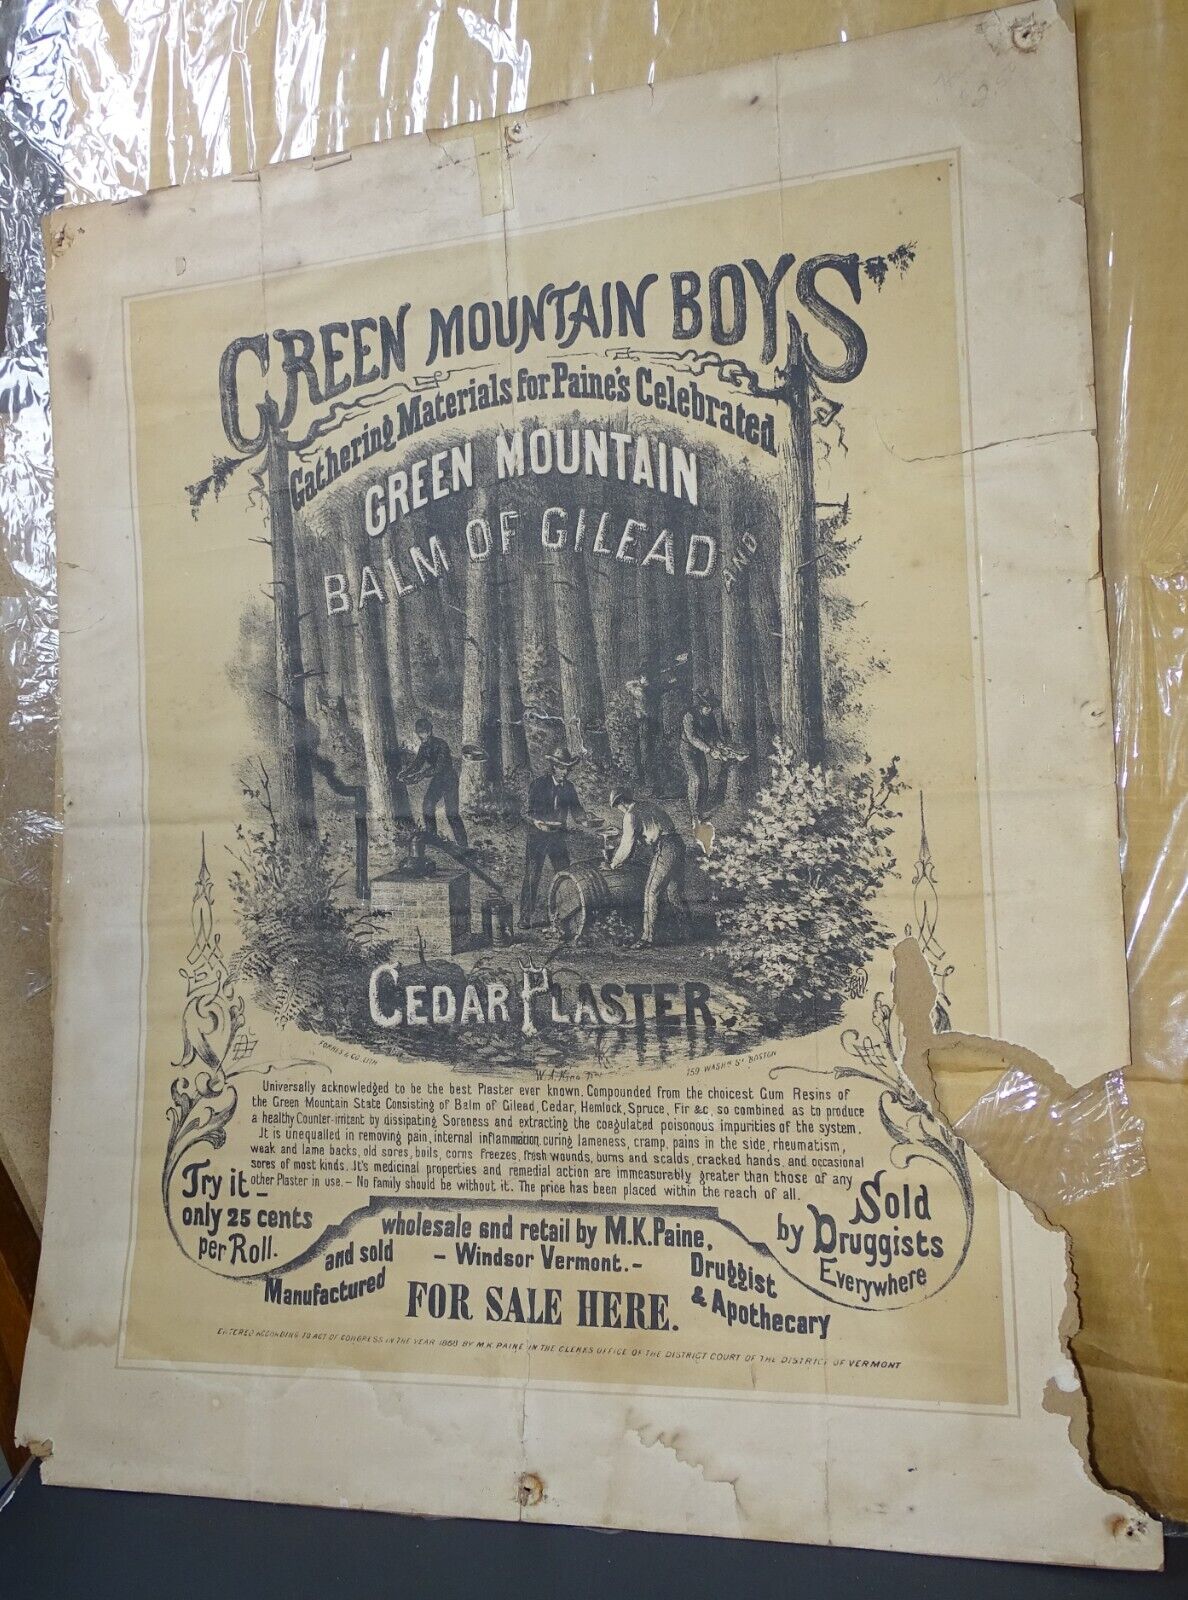 Green Mountain Boys Balm of Gilead Cedar Plaster Antique Poster (poor)